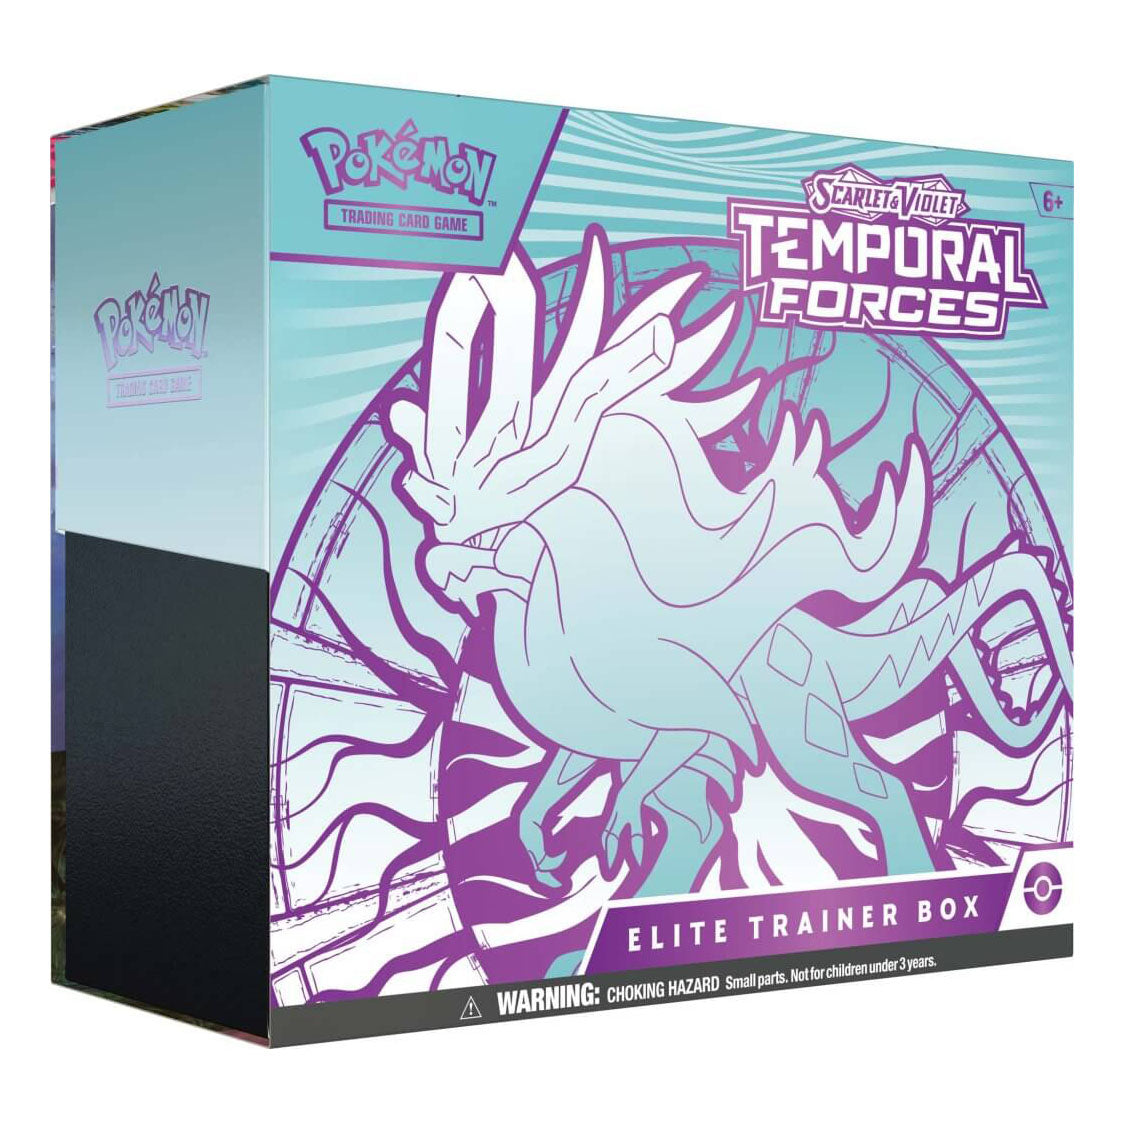 Pokemon TCG - Scarlet & Violet - Temporal Forces Elite Trainer Box